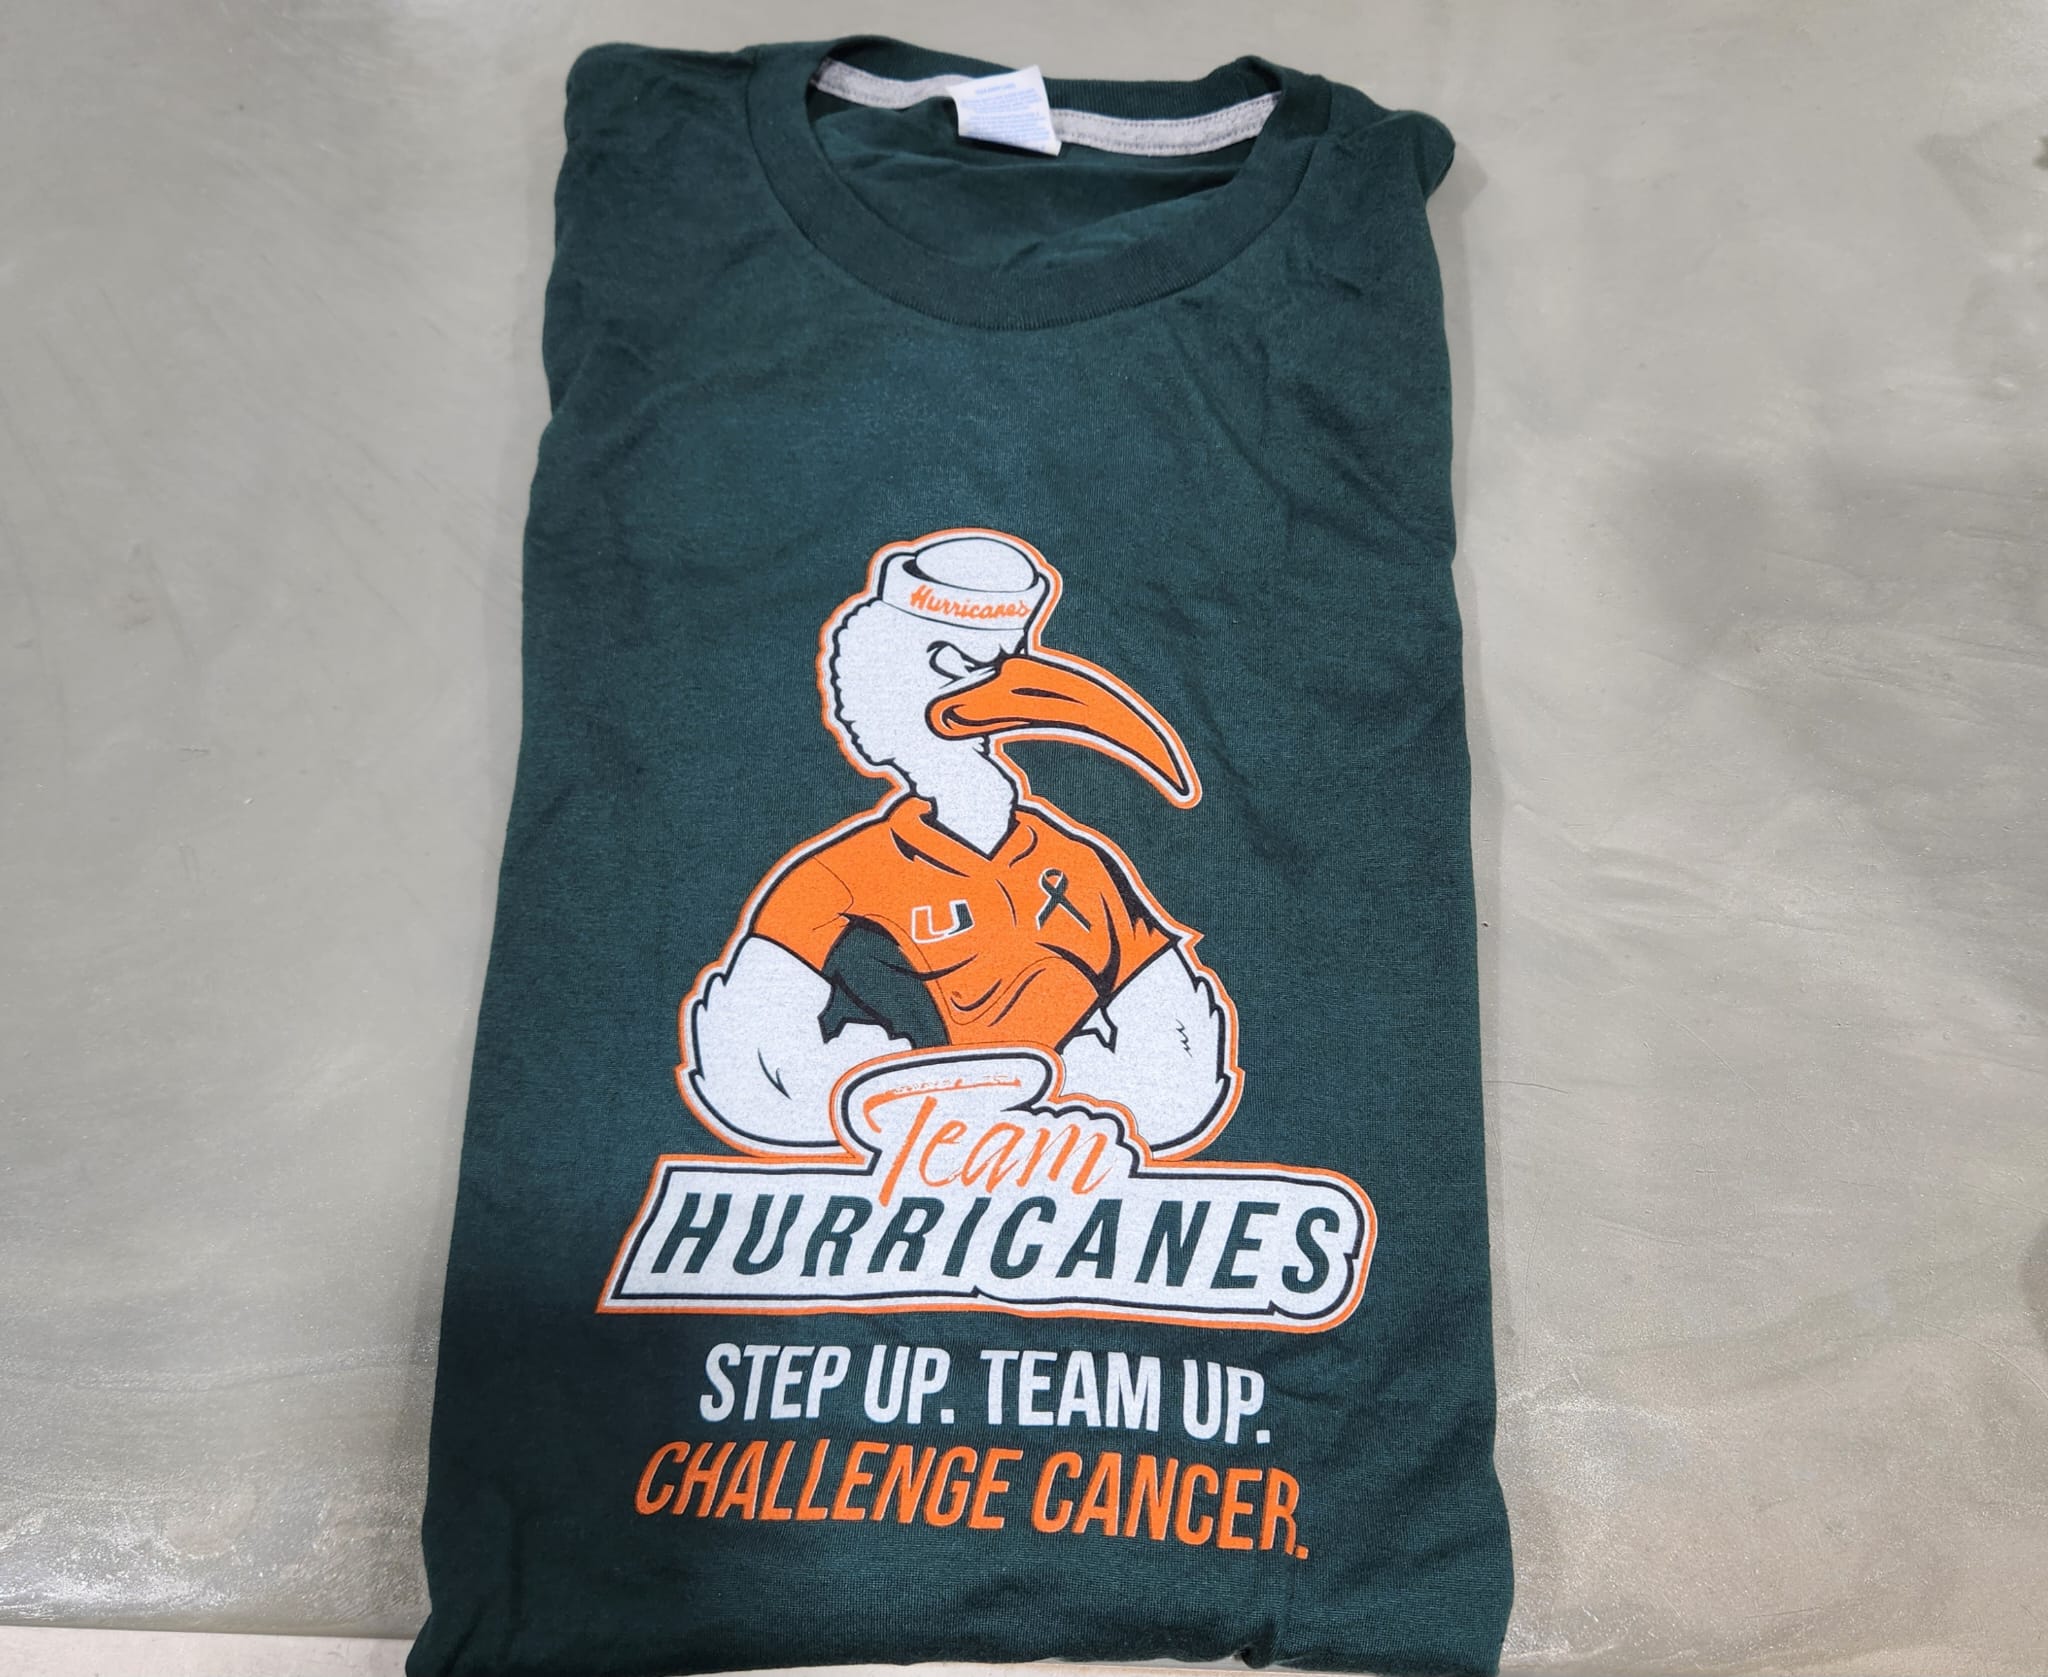 Team Hurricanes DCC 2022 Green T-Shirt - Women